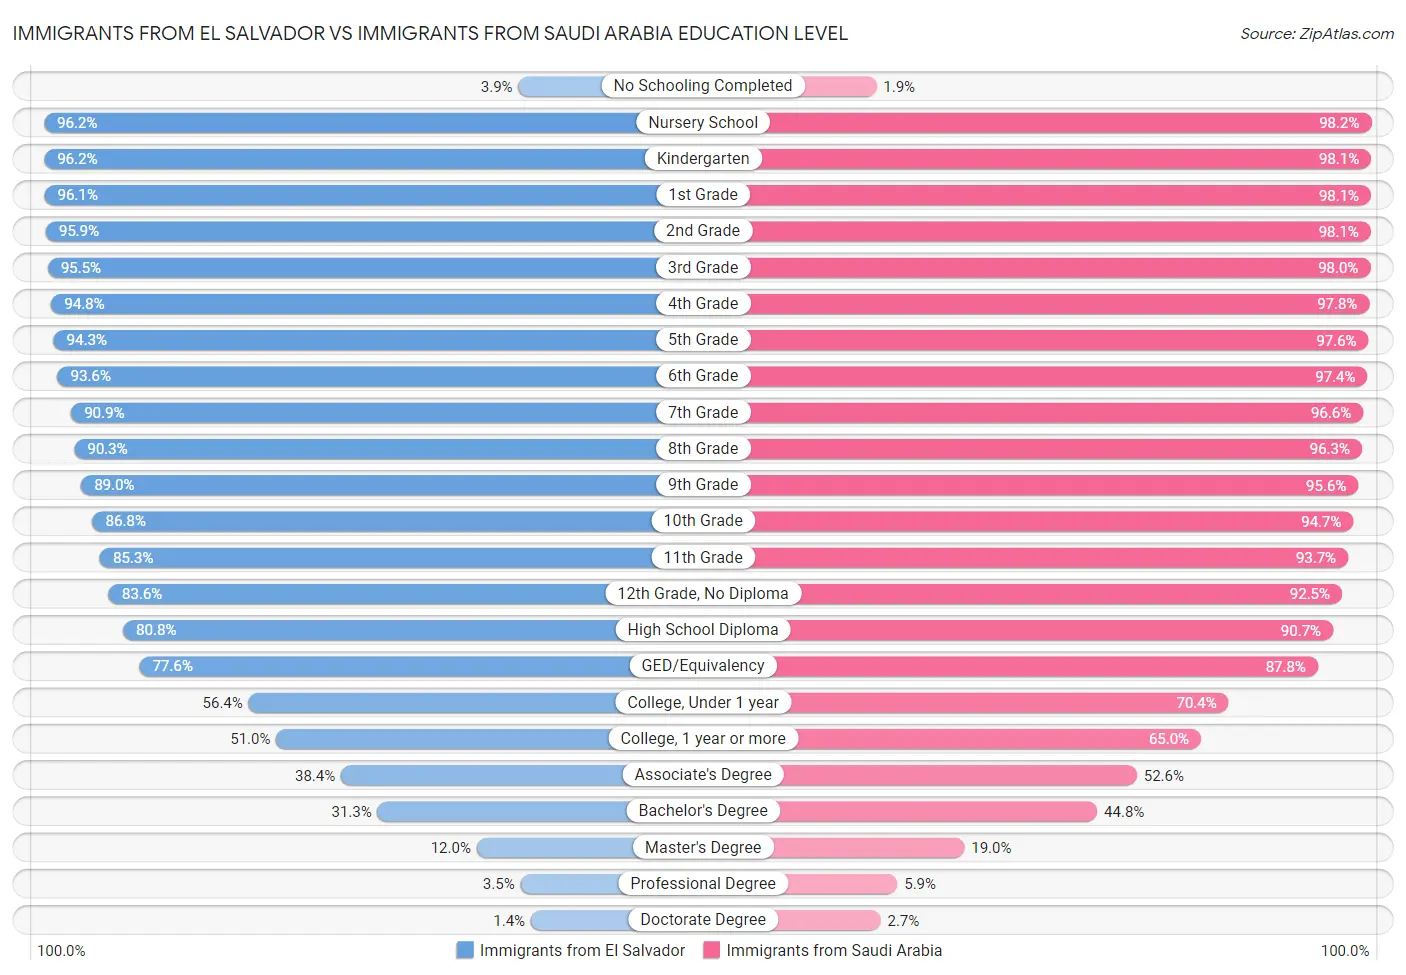 Immigrants from El Salvador vs Immigrants from Saudi Arabia Education Level